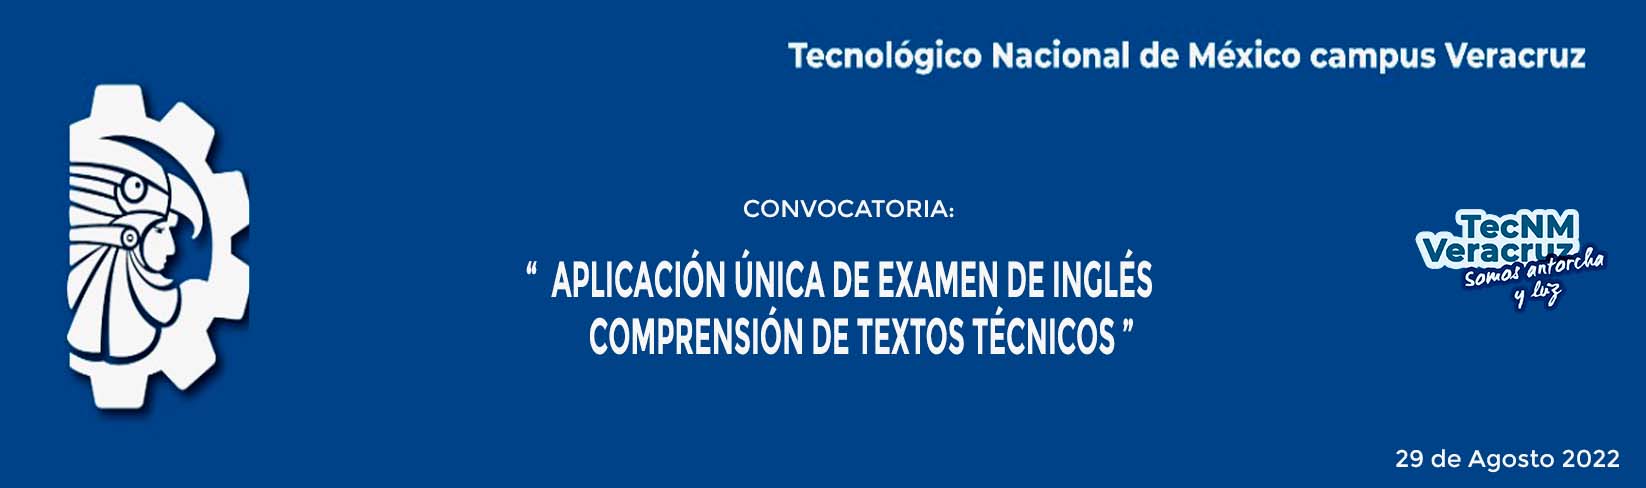 CONVOCATORIA APLICACIÓN ÚNICA DE EXAMEN DE INGLÉS COMPRENSIÓN DE TEXTOS TÉCNICOS